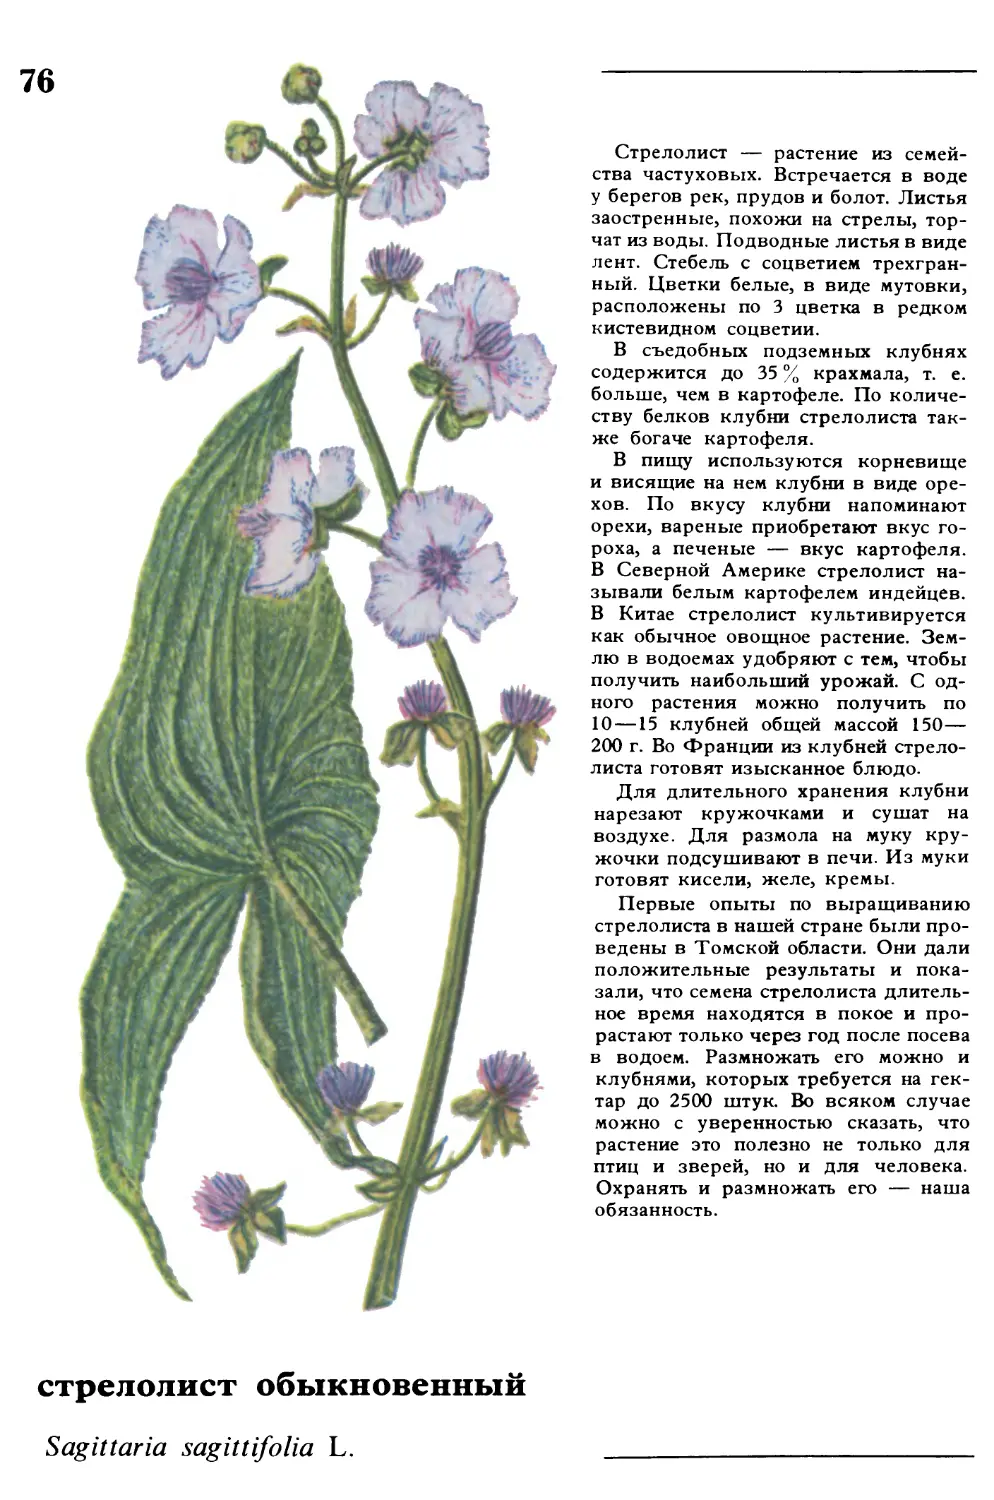 Стрелолист
стрелолист обыкновенный
Sagittaria sagittifolia L.